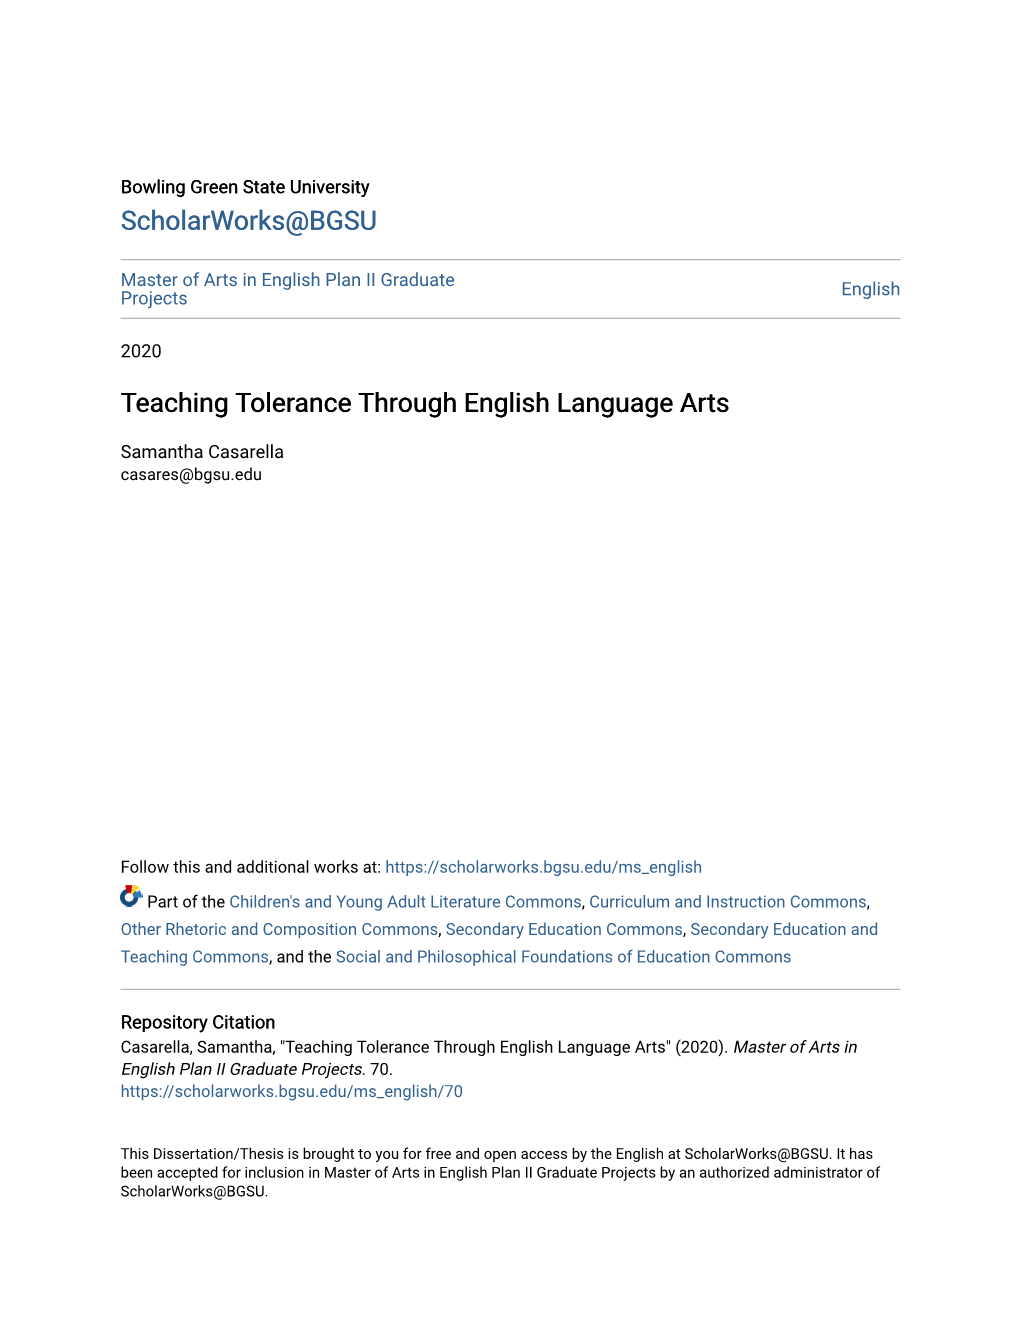 Teaching Tolerance Through English Language Arts